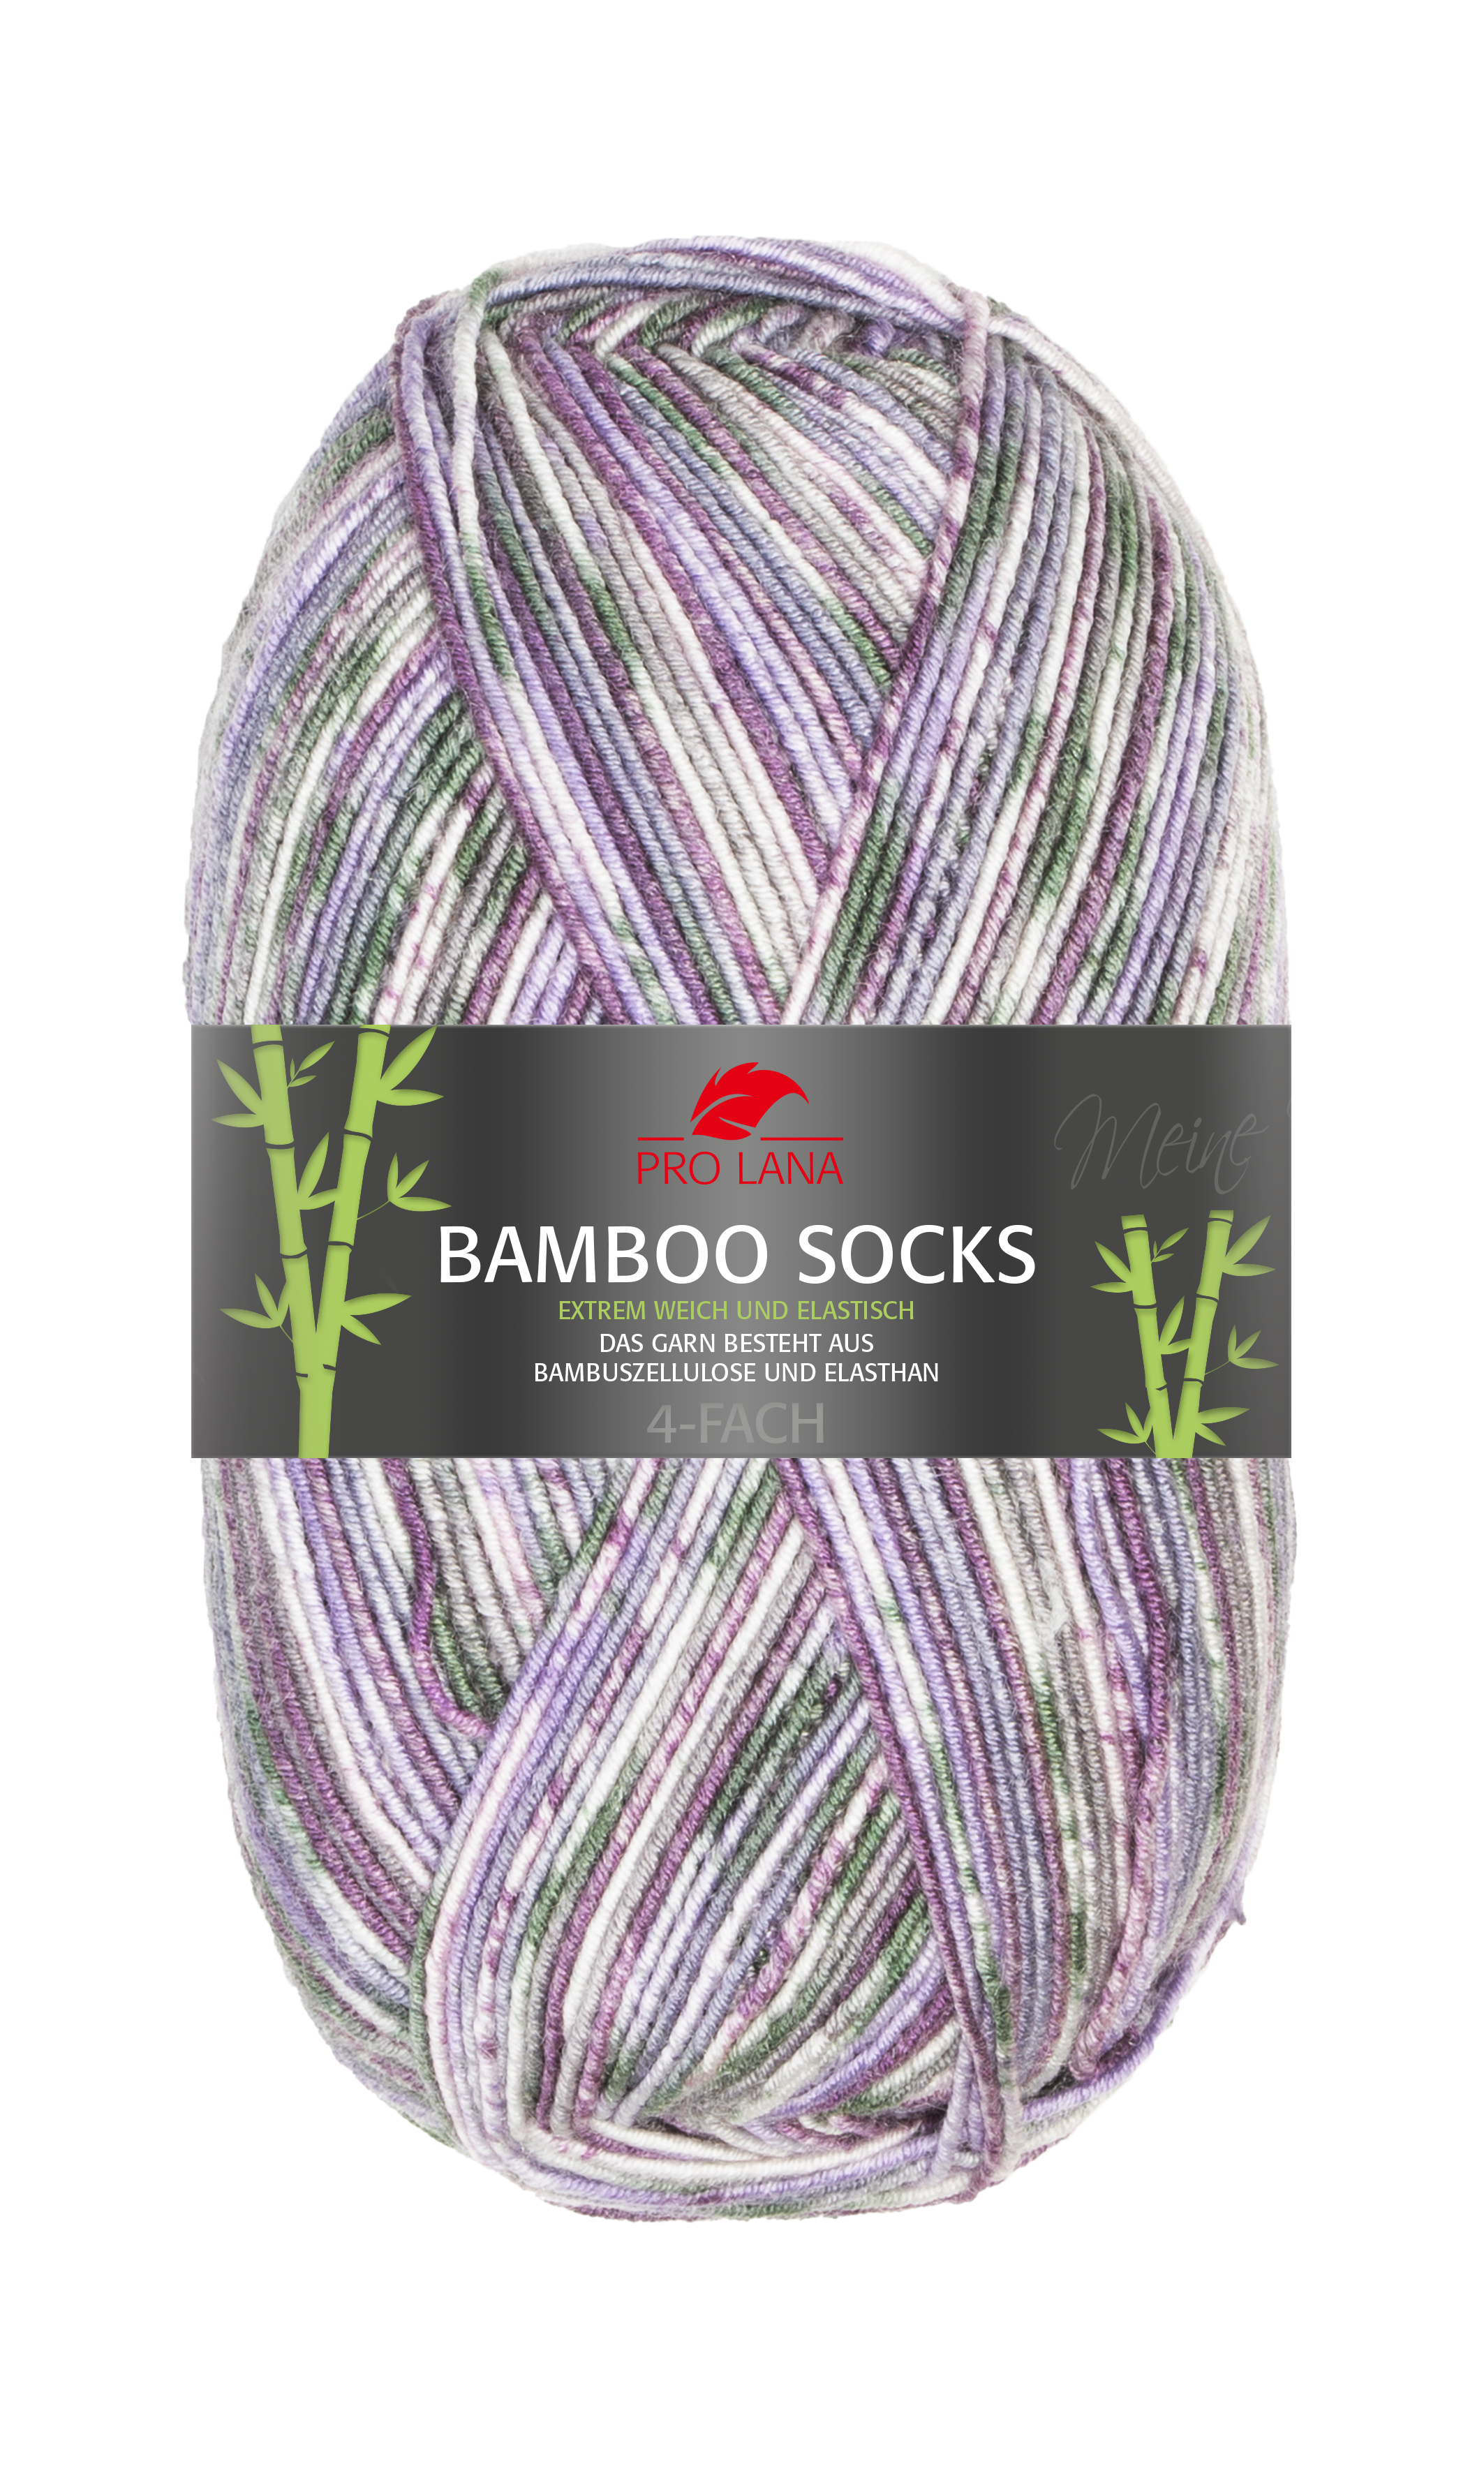 Bamboo Socks violett/grau meliert 